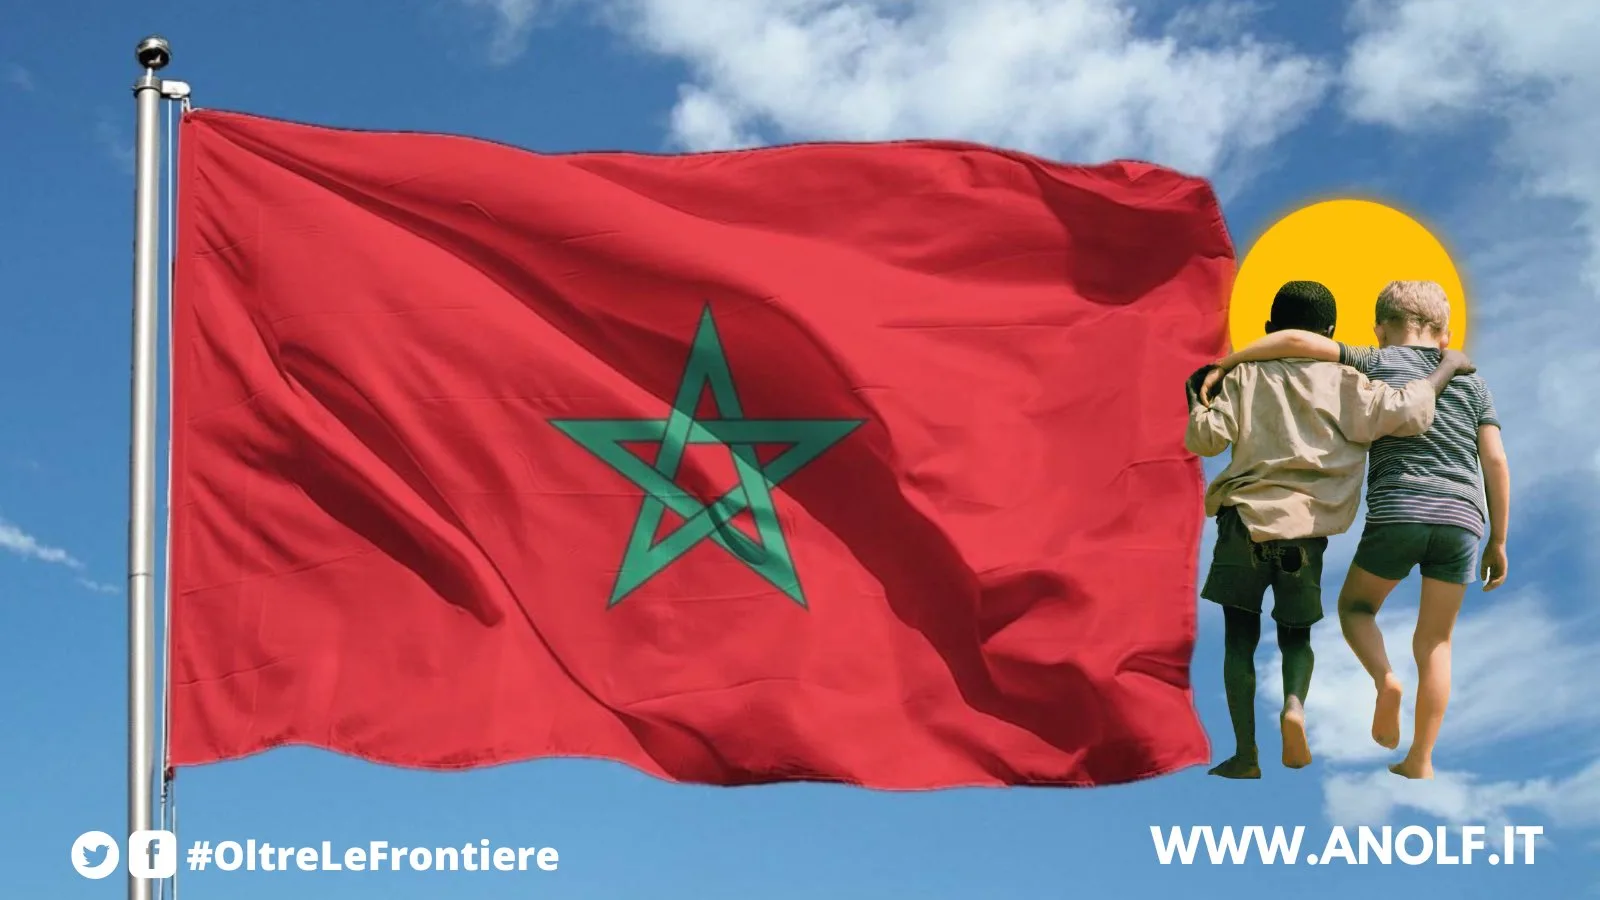 ANOLF. Solidarietà con il popolo marocchino